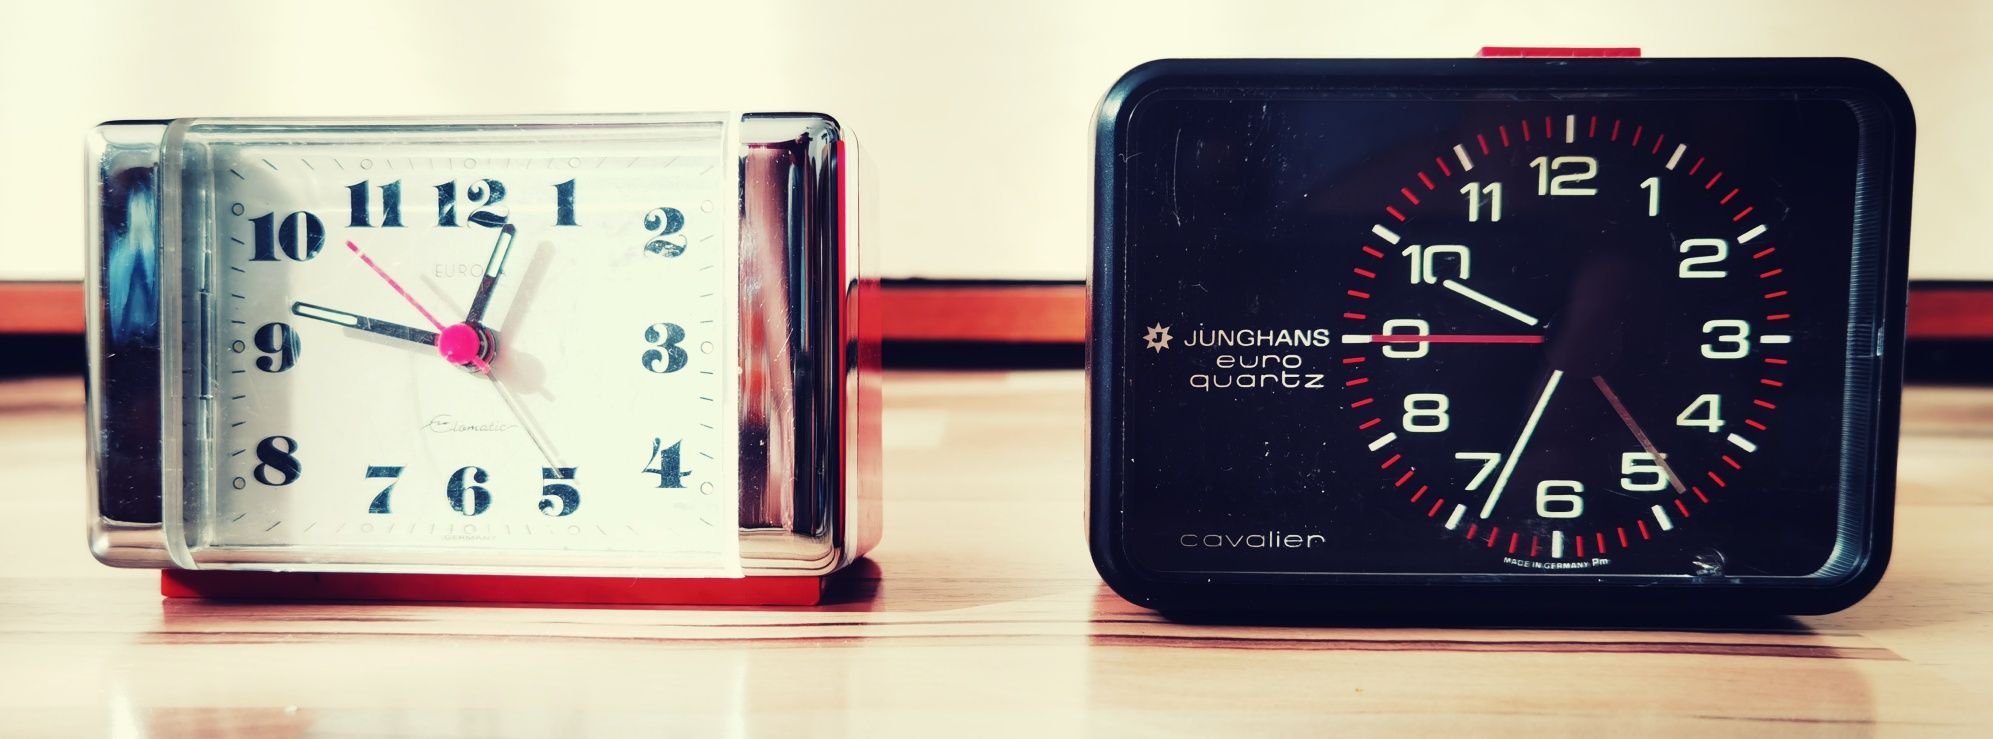 Ceasuri deșteptătoare de masă Junghans Europa retro vintage colecție